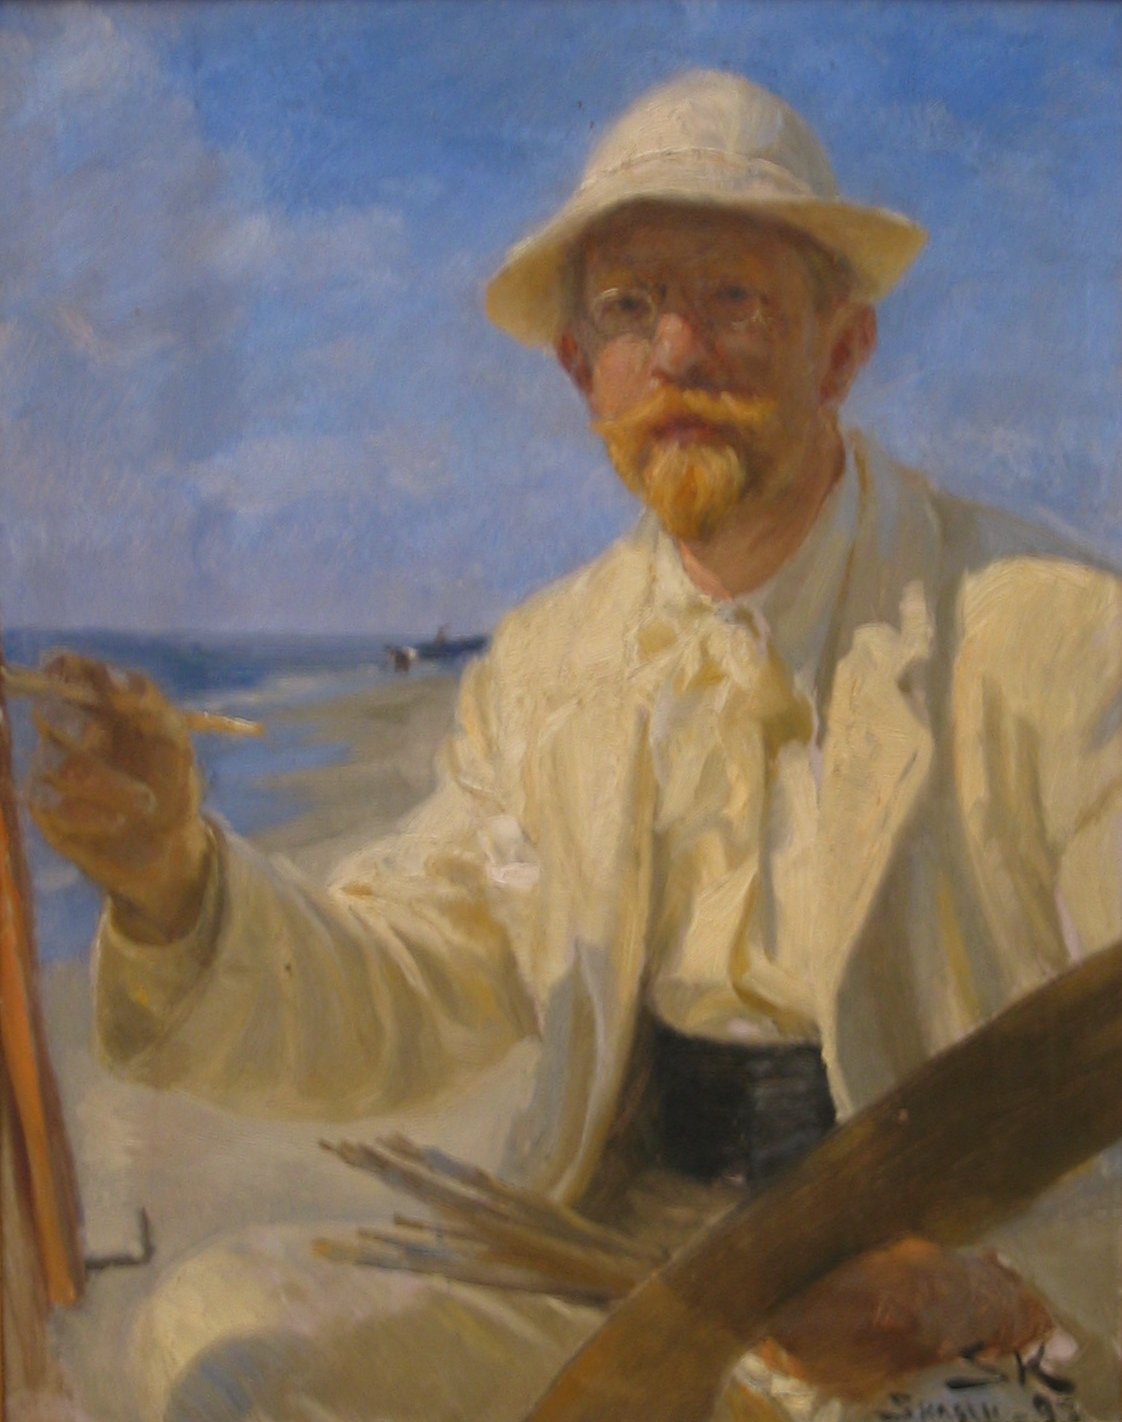 autoportrait de Peder Severin Krøyer - wikimedia